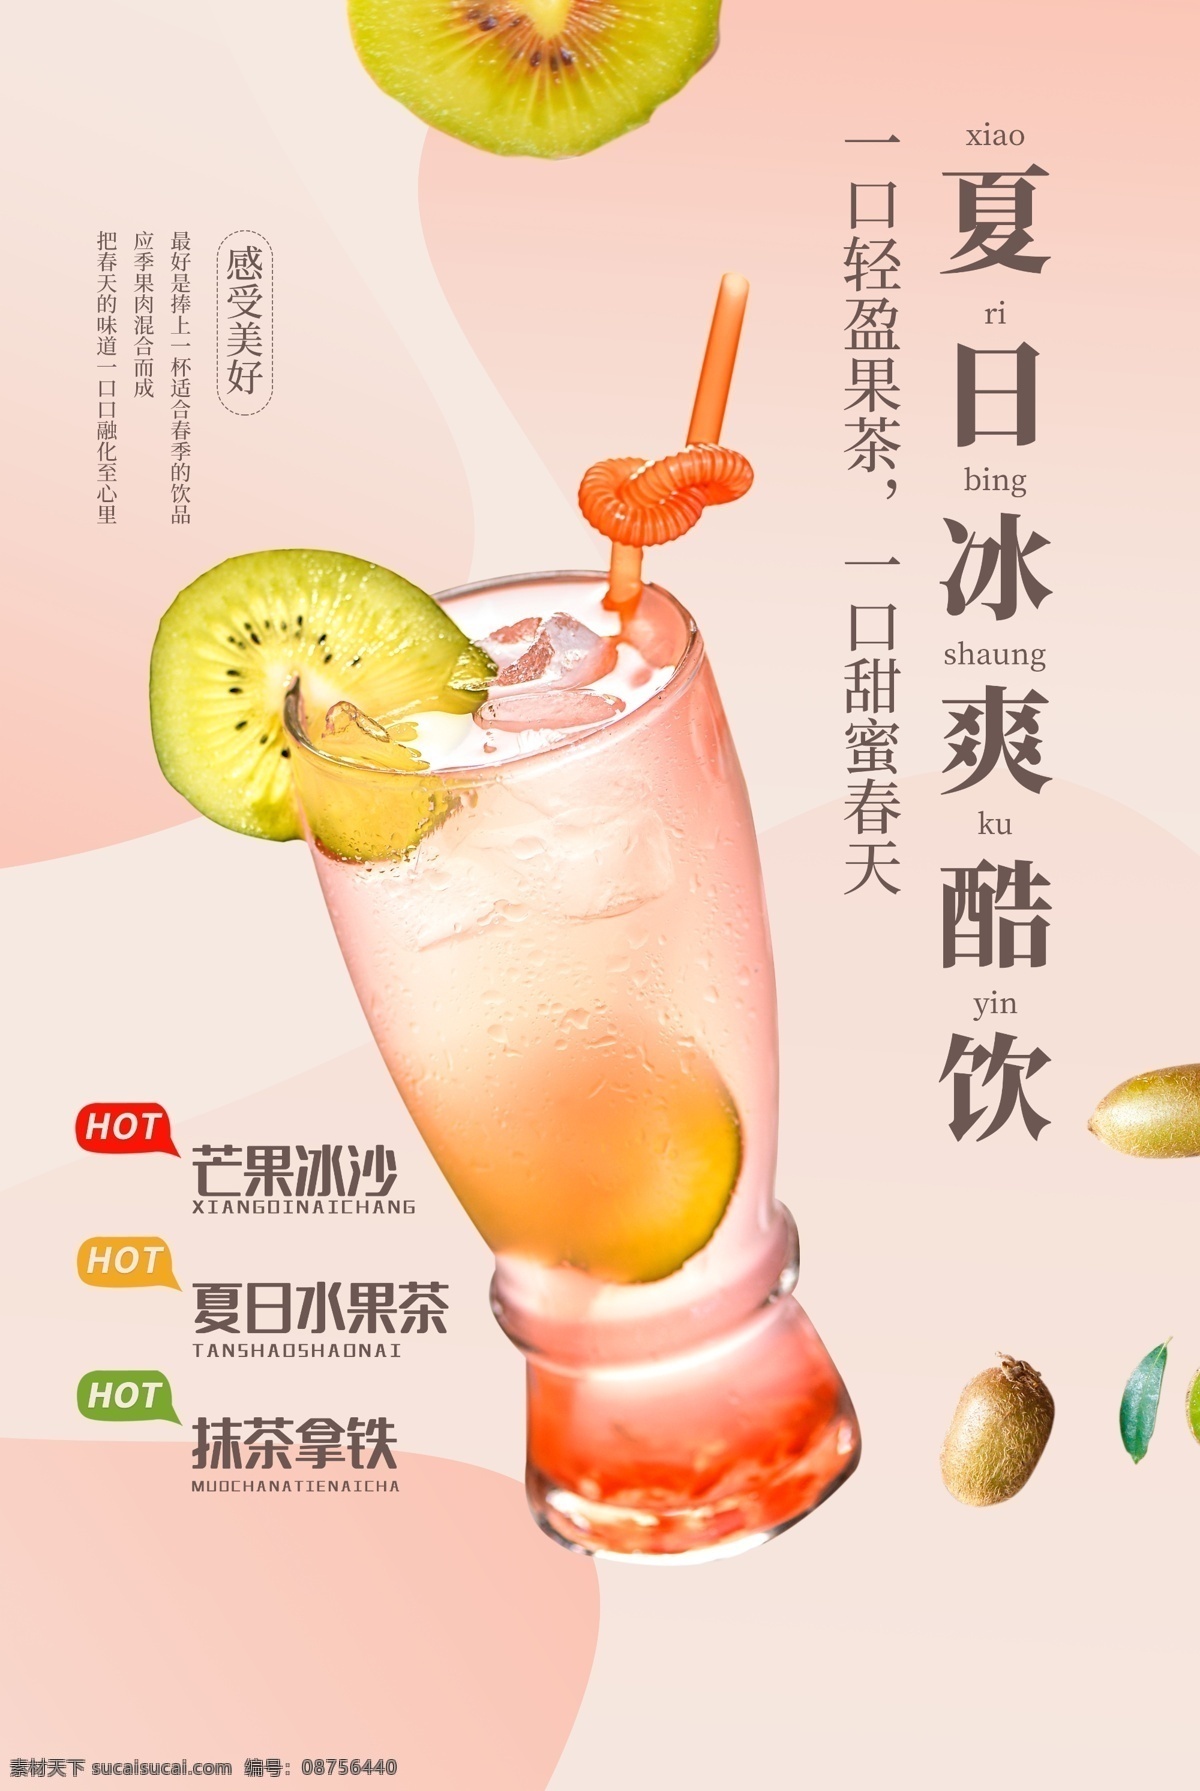 夏日 饮品 促销活动 宣传海报 促销 活动 宣传 海报 饮料 甜品 类